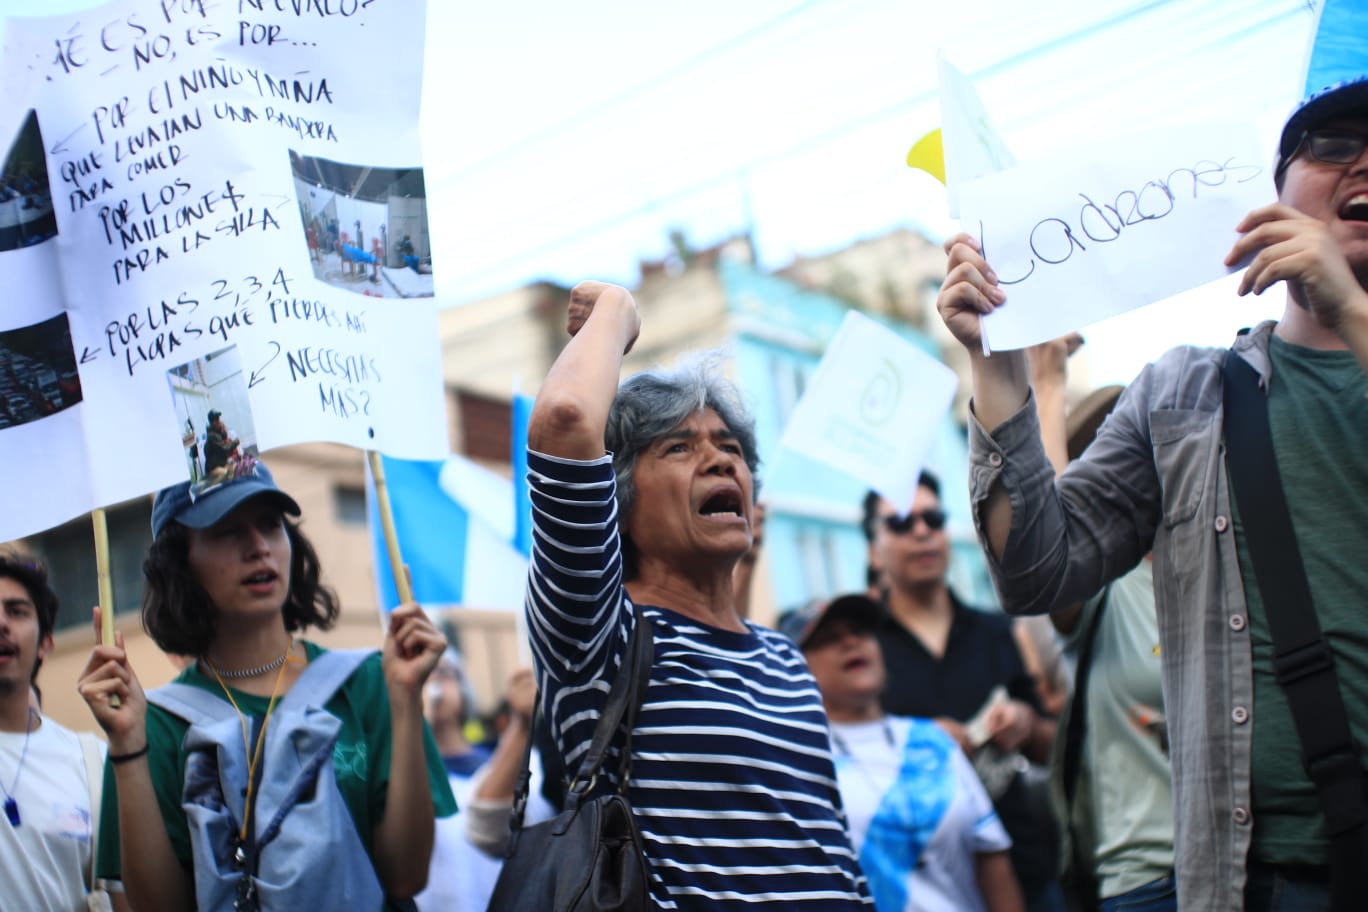 La orden del juez Fredy Orellana de suspender al Movimiento Semilla generó protestas. (Foto Prensa Libre: Carlos Hernández Ovalle)